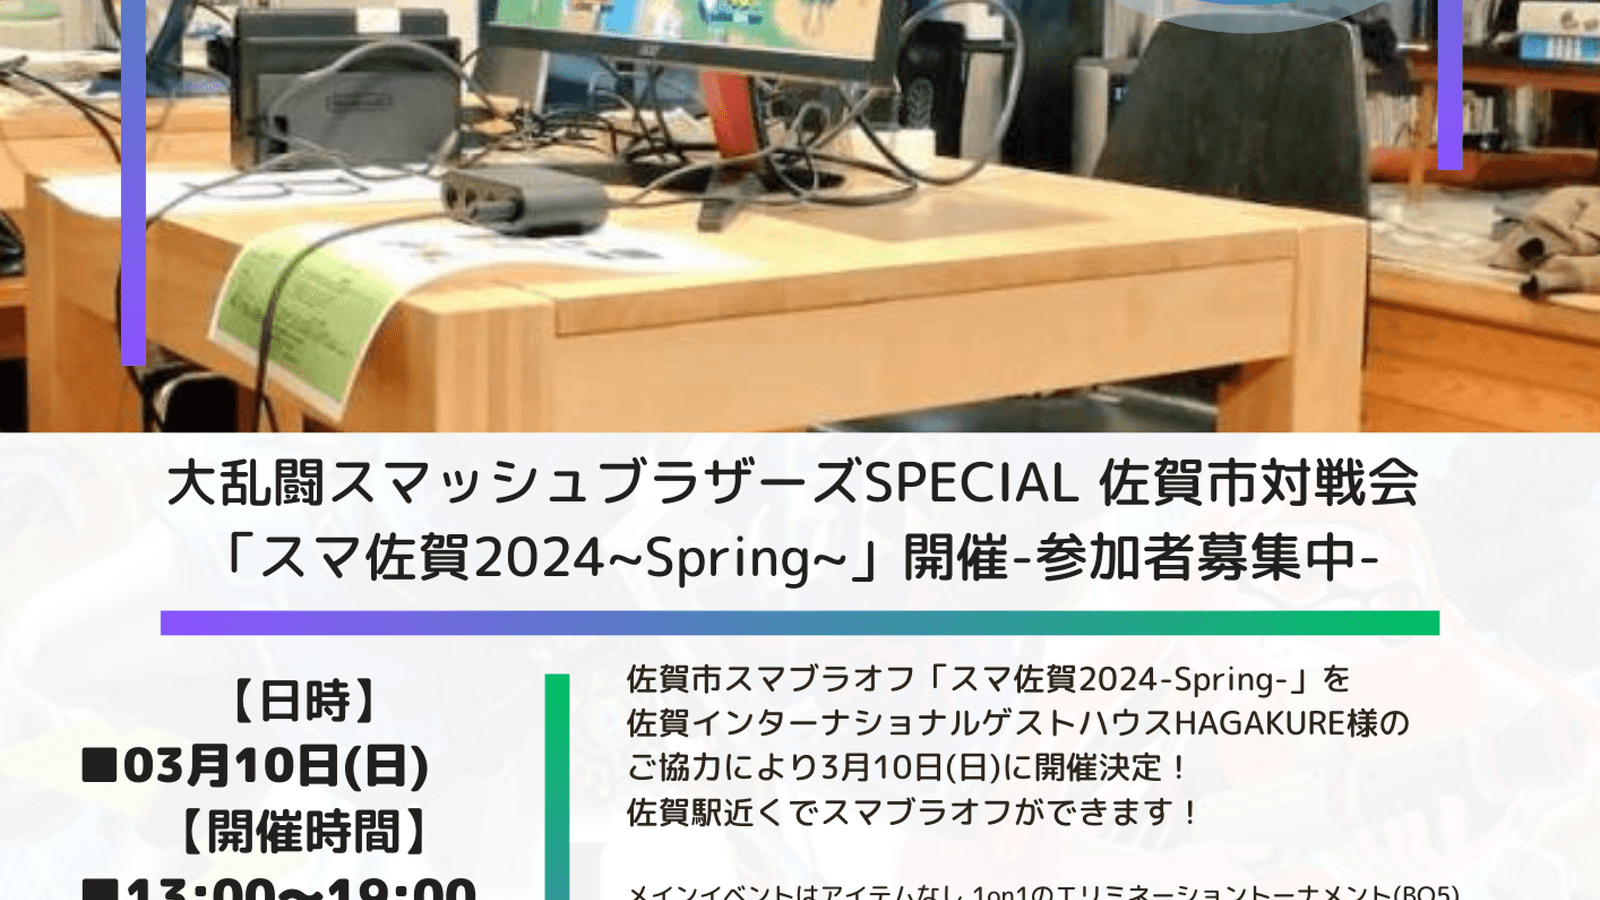 スマ佐賀2024-Spring- feature image